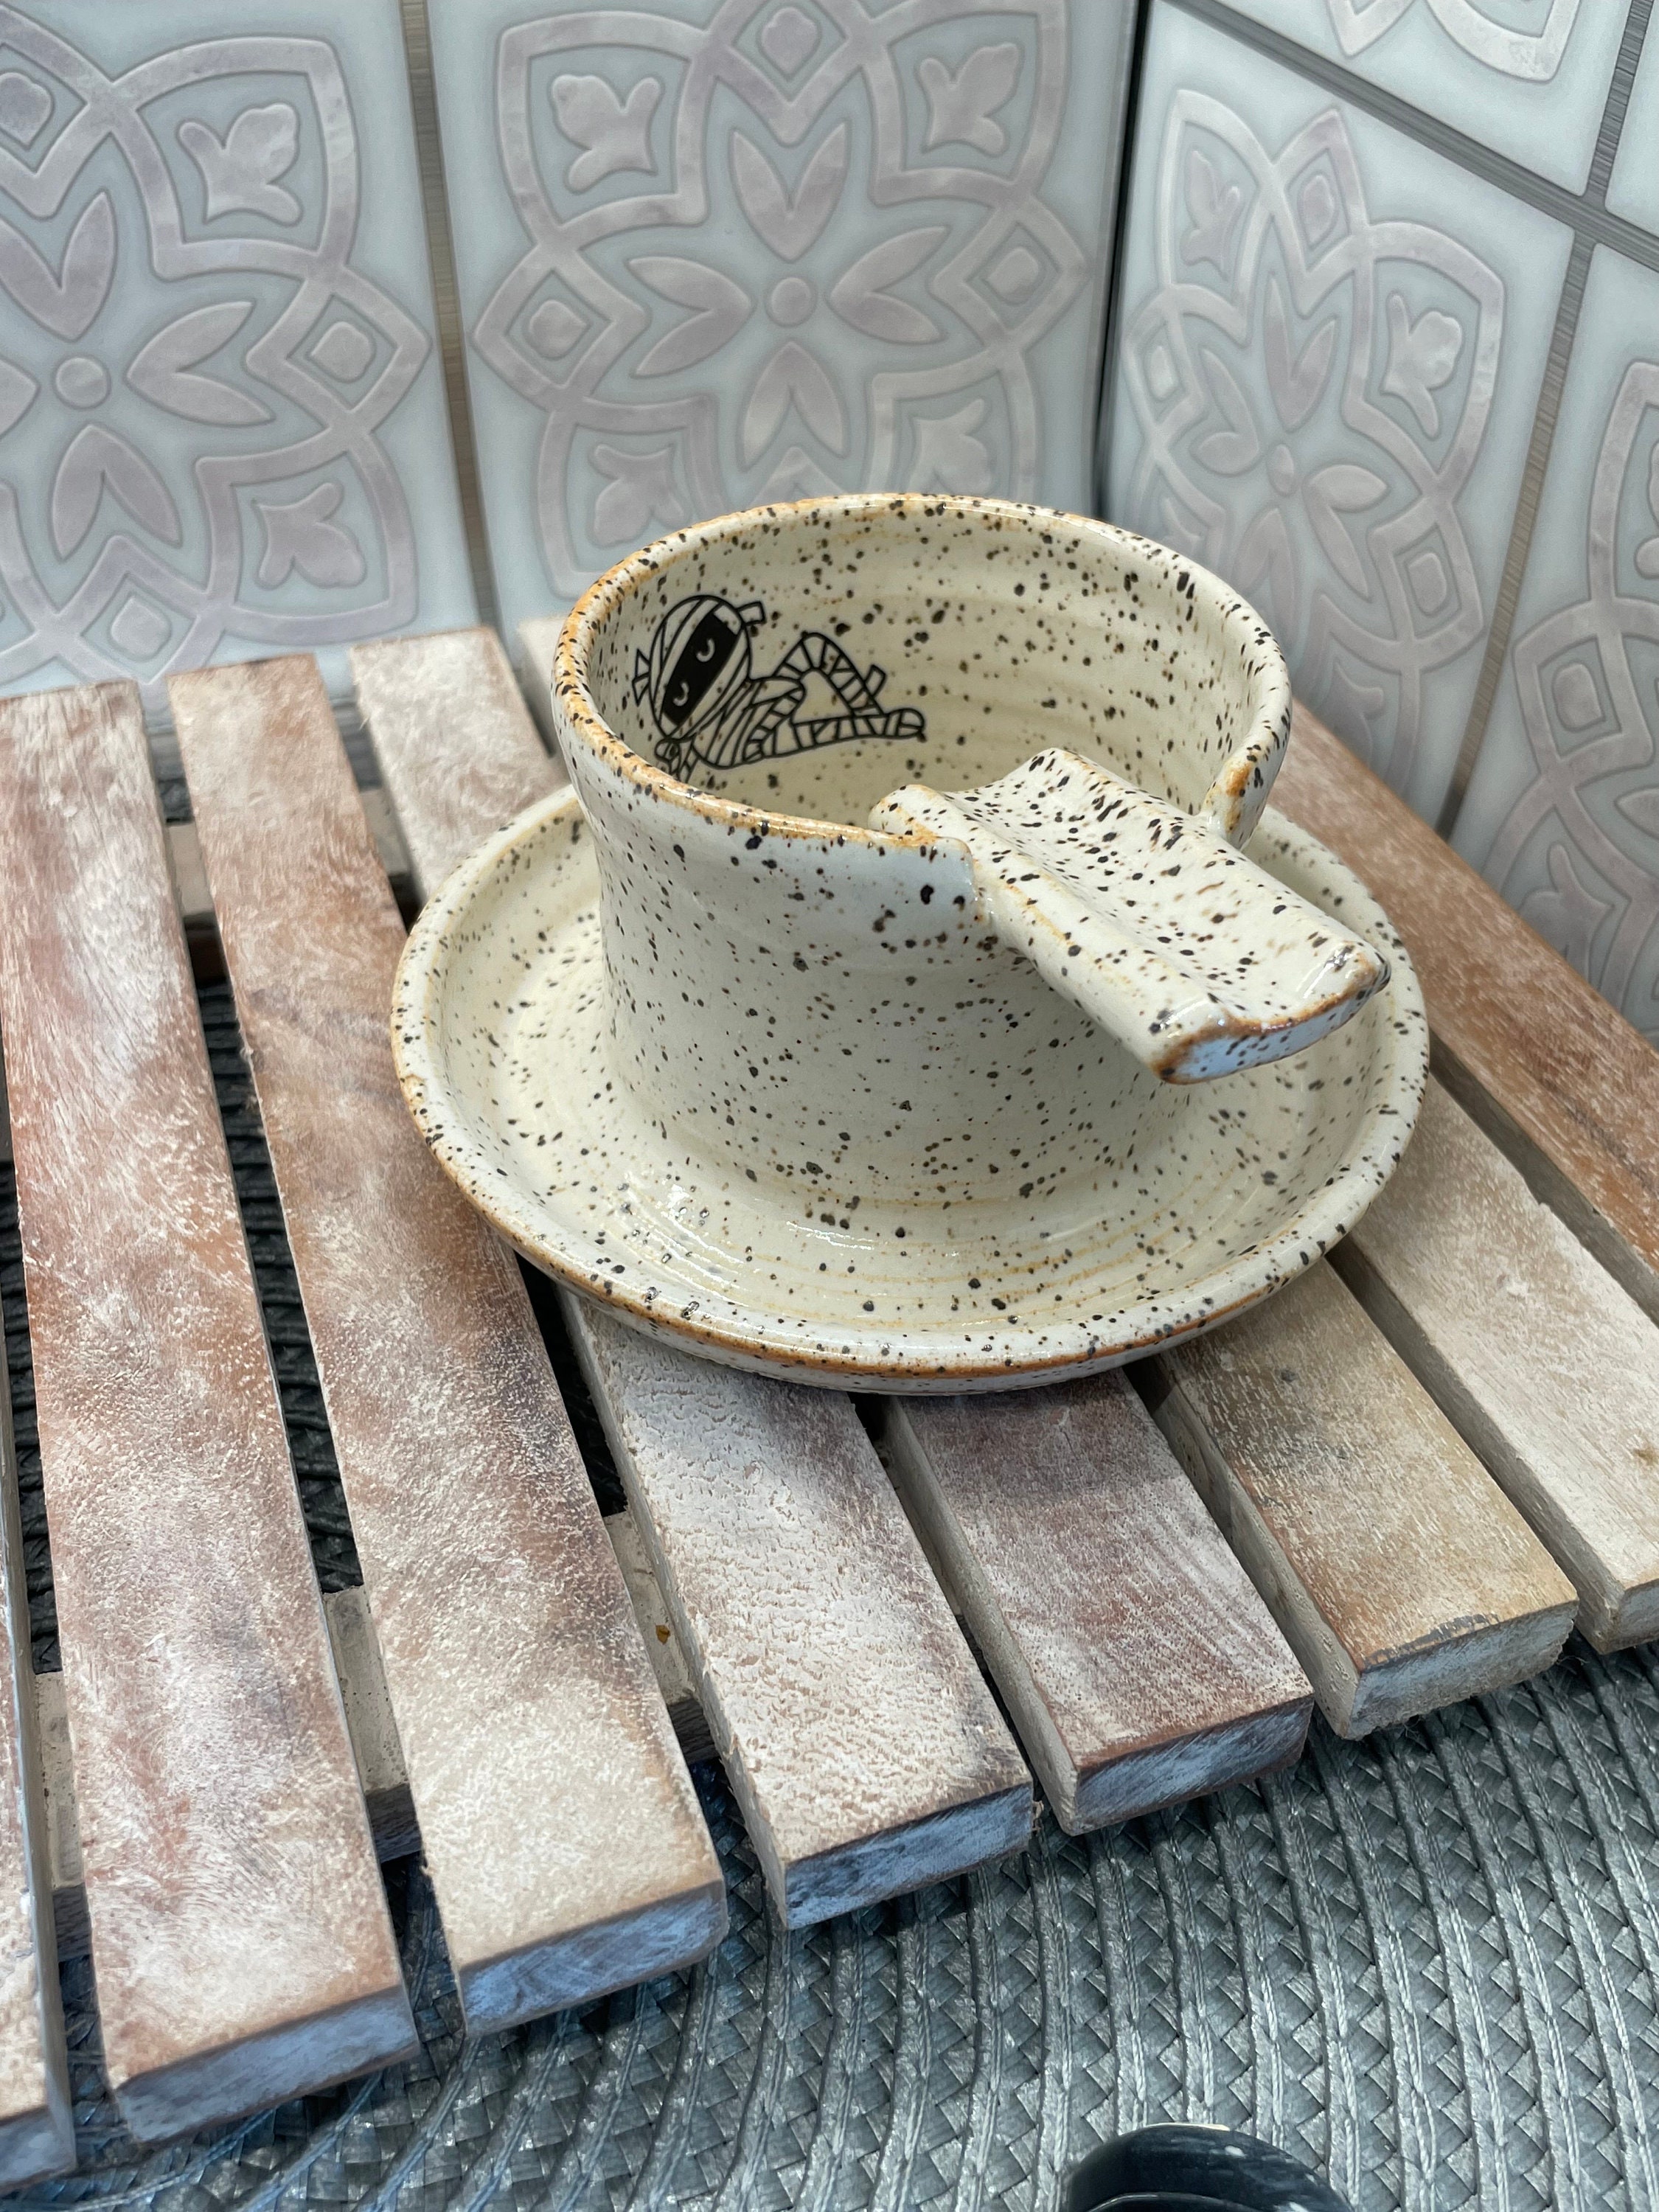 Ashtray Ceramic, Handmade Stoneware Pottery, Smoking Accessory 